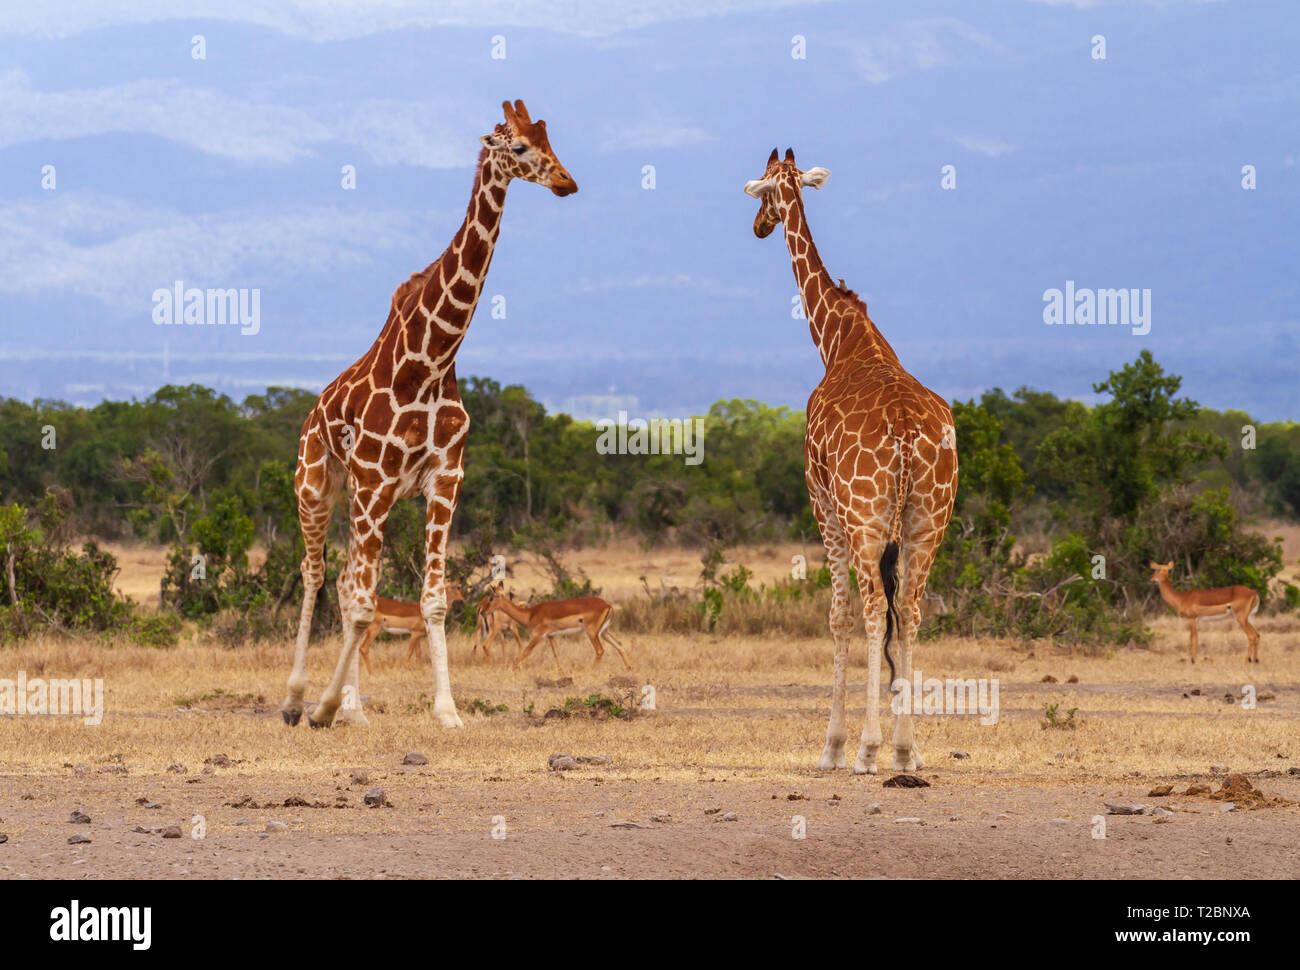 Due giraffe reticolate, Giraffa camelopardalis reticulata, maschili e femminili si incontrano. OL Pejeta Conservancy, Kenya. Savana africana secca Foto Stock